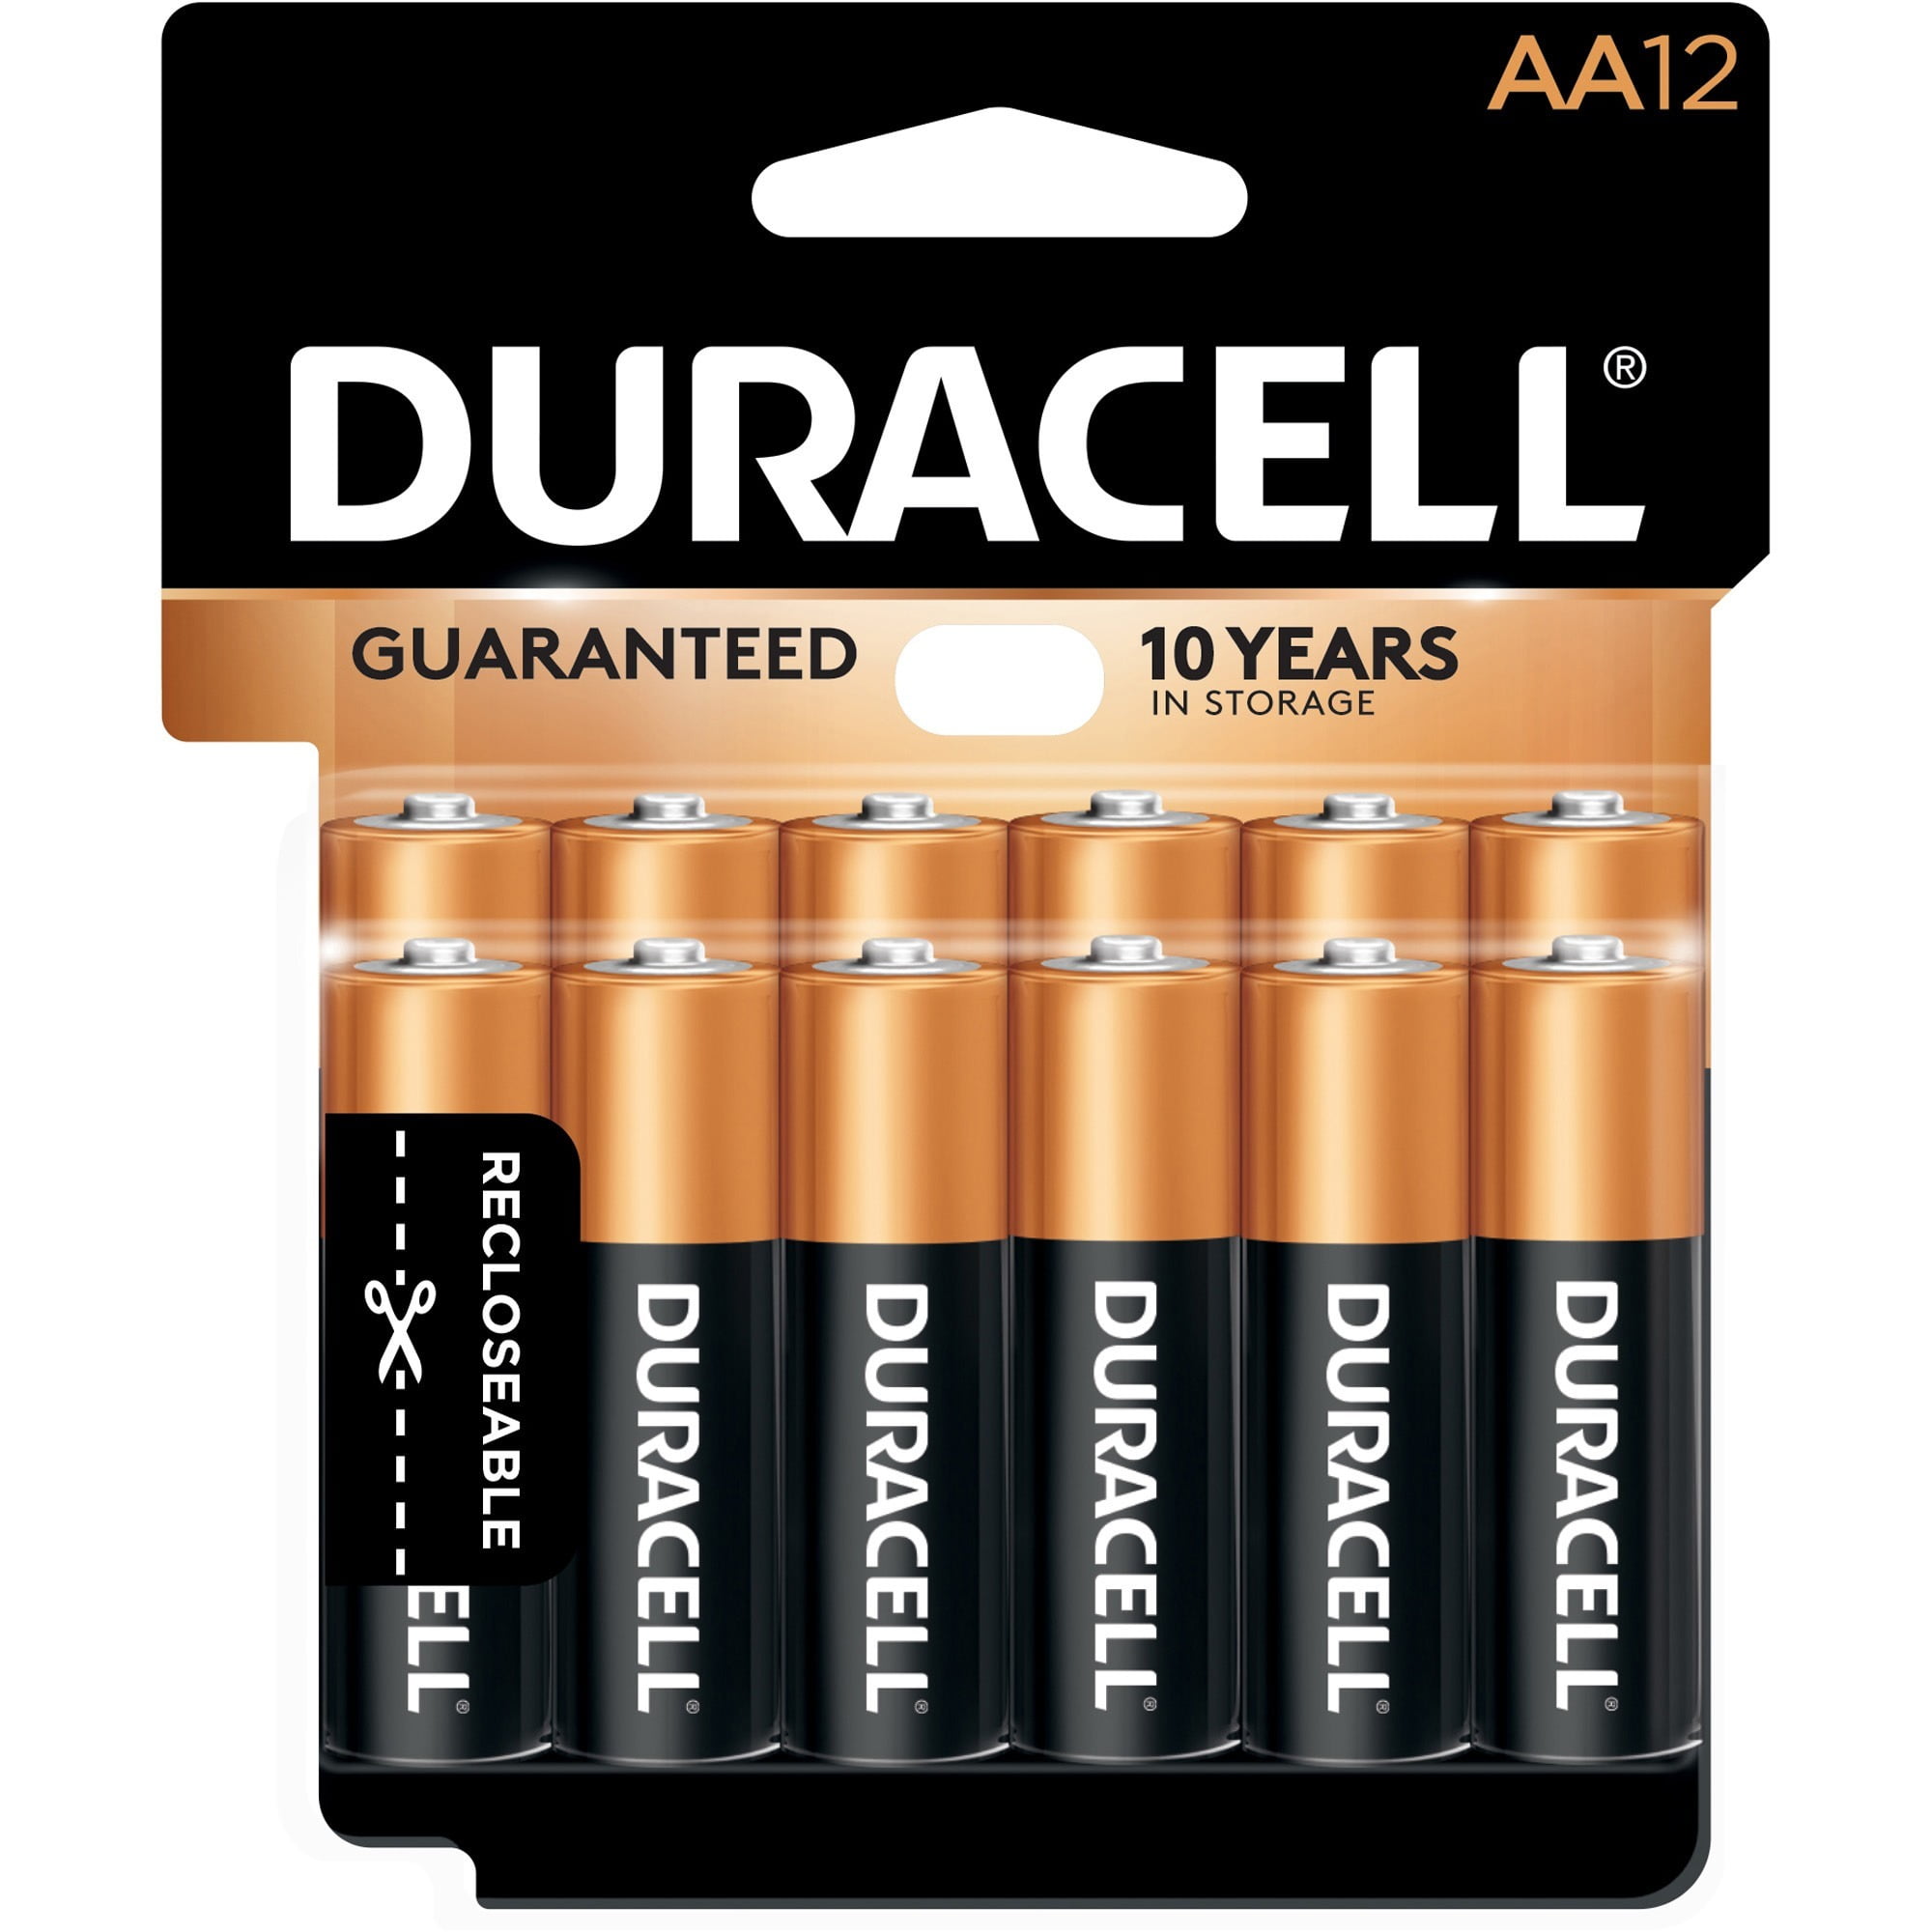 12x Duracell  Batterie  AA  LR06  Mignon  MN1500  12er Blister 